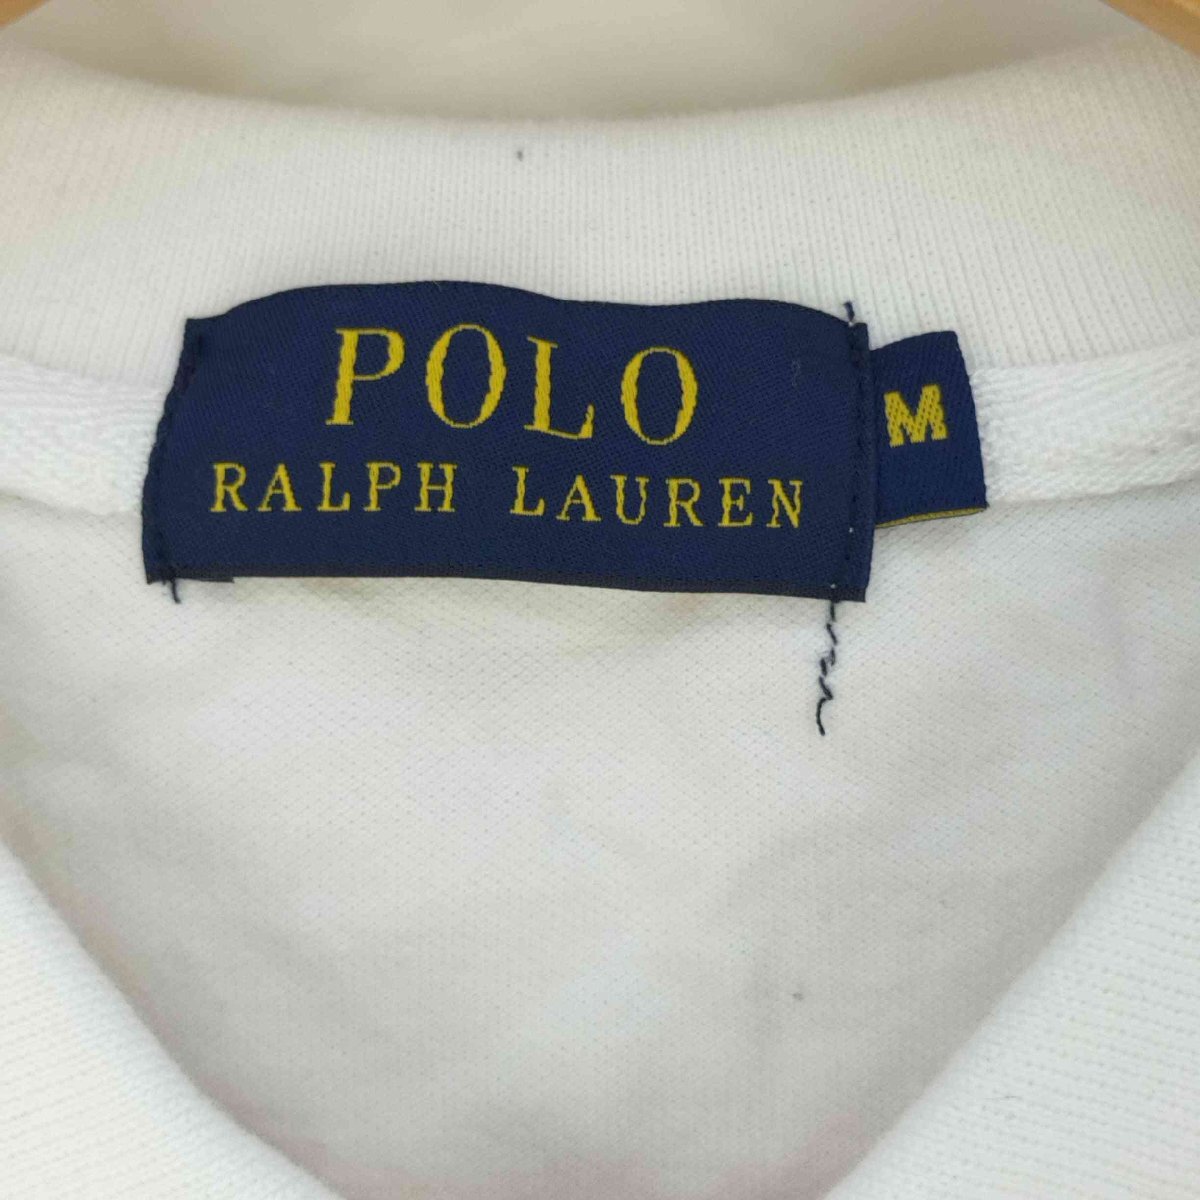 POLO RALPH LAUREN(ポロラルフローレン) ビッグポニー刺繍 ボーダーポロシャツ メンズ i 中古 古着 0246_画像6